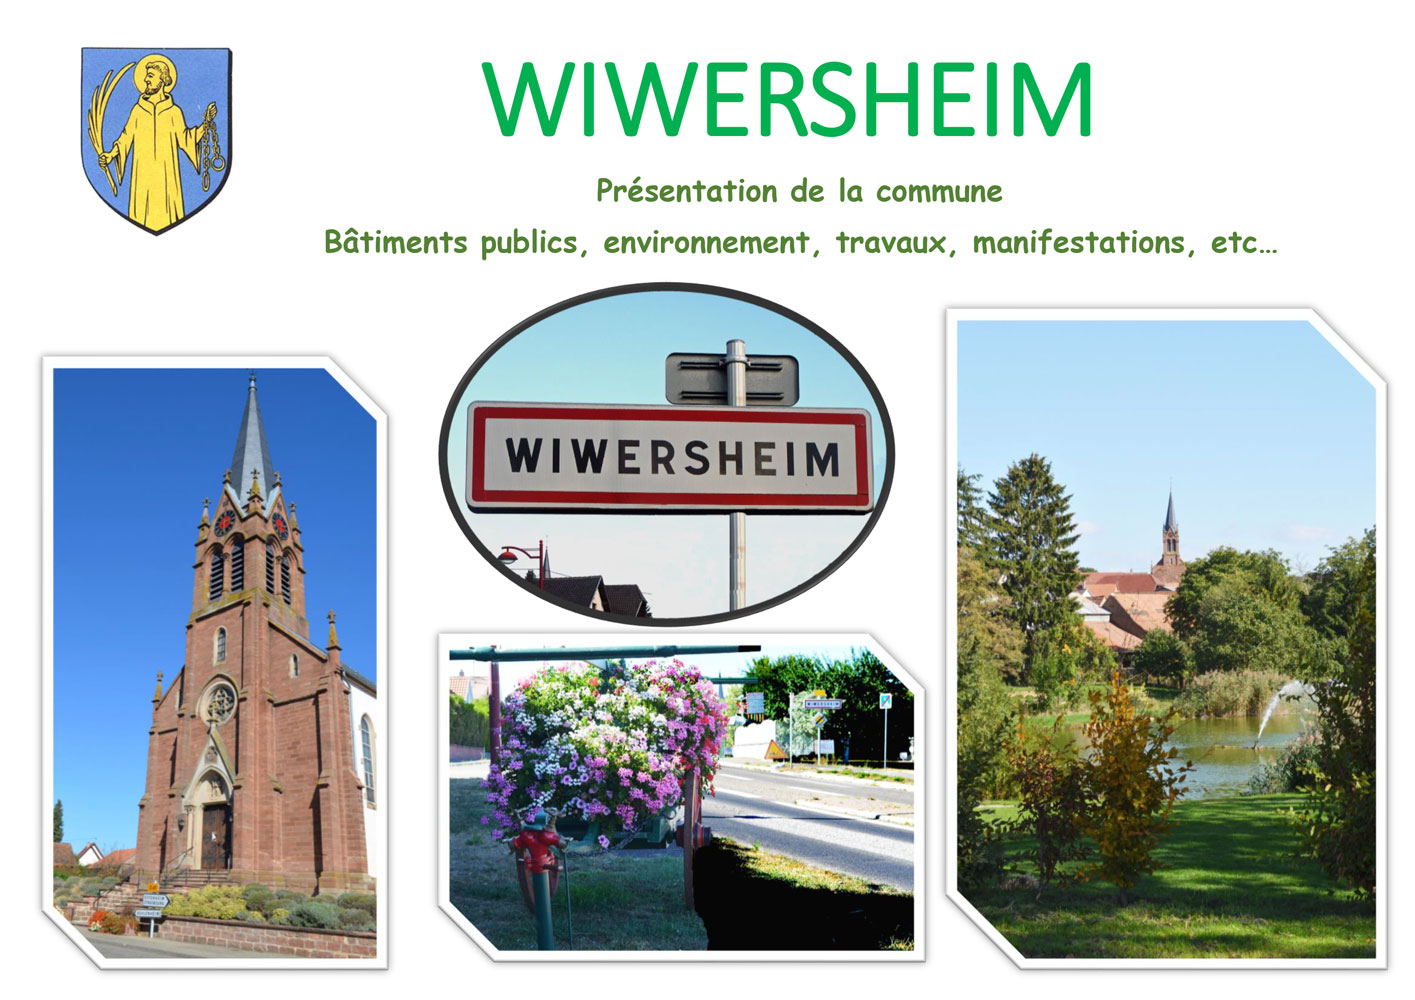 Présentation de la commune de Wiwersheim au Conseil Communautaire du 30 juin 2022